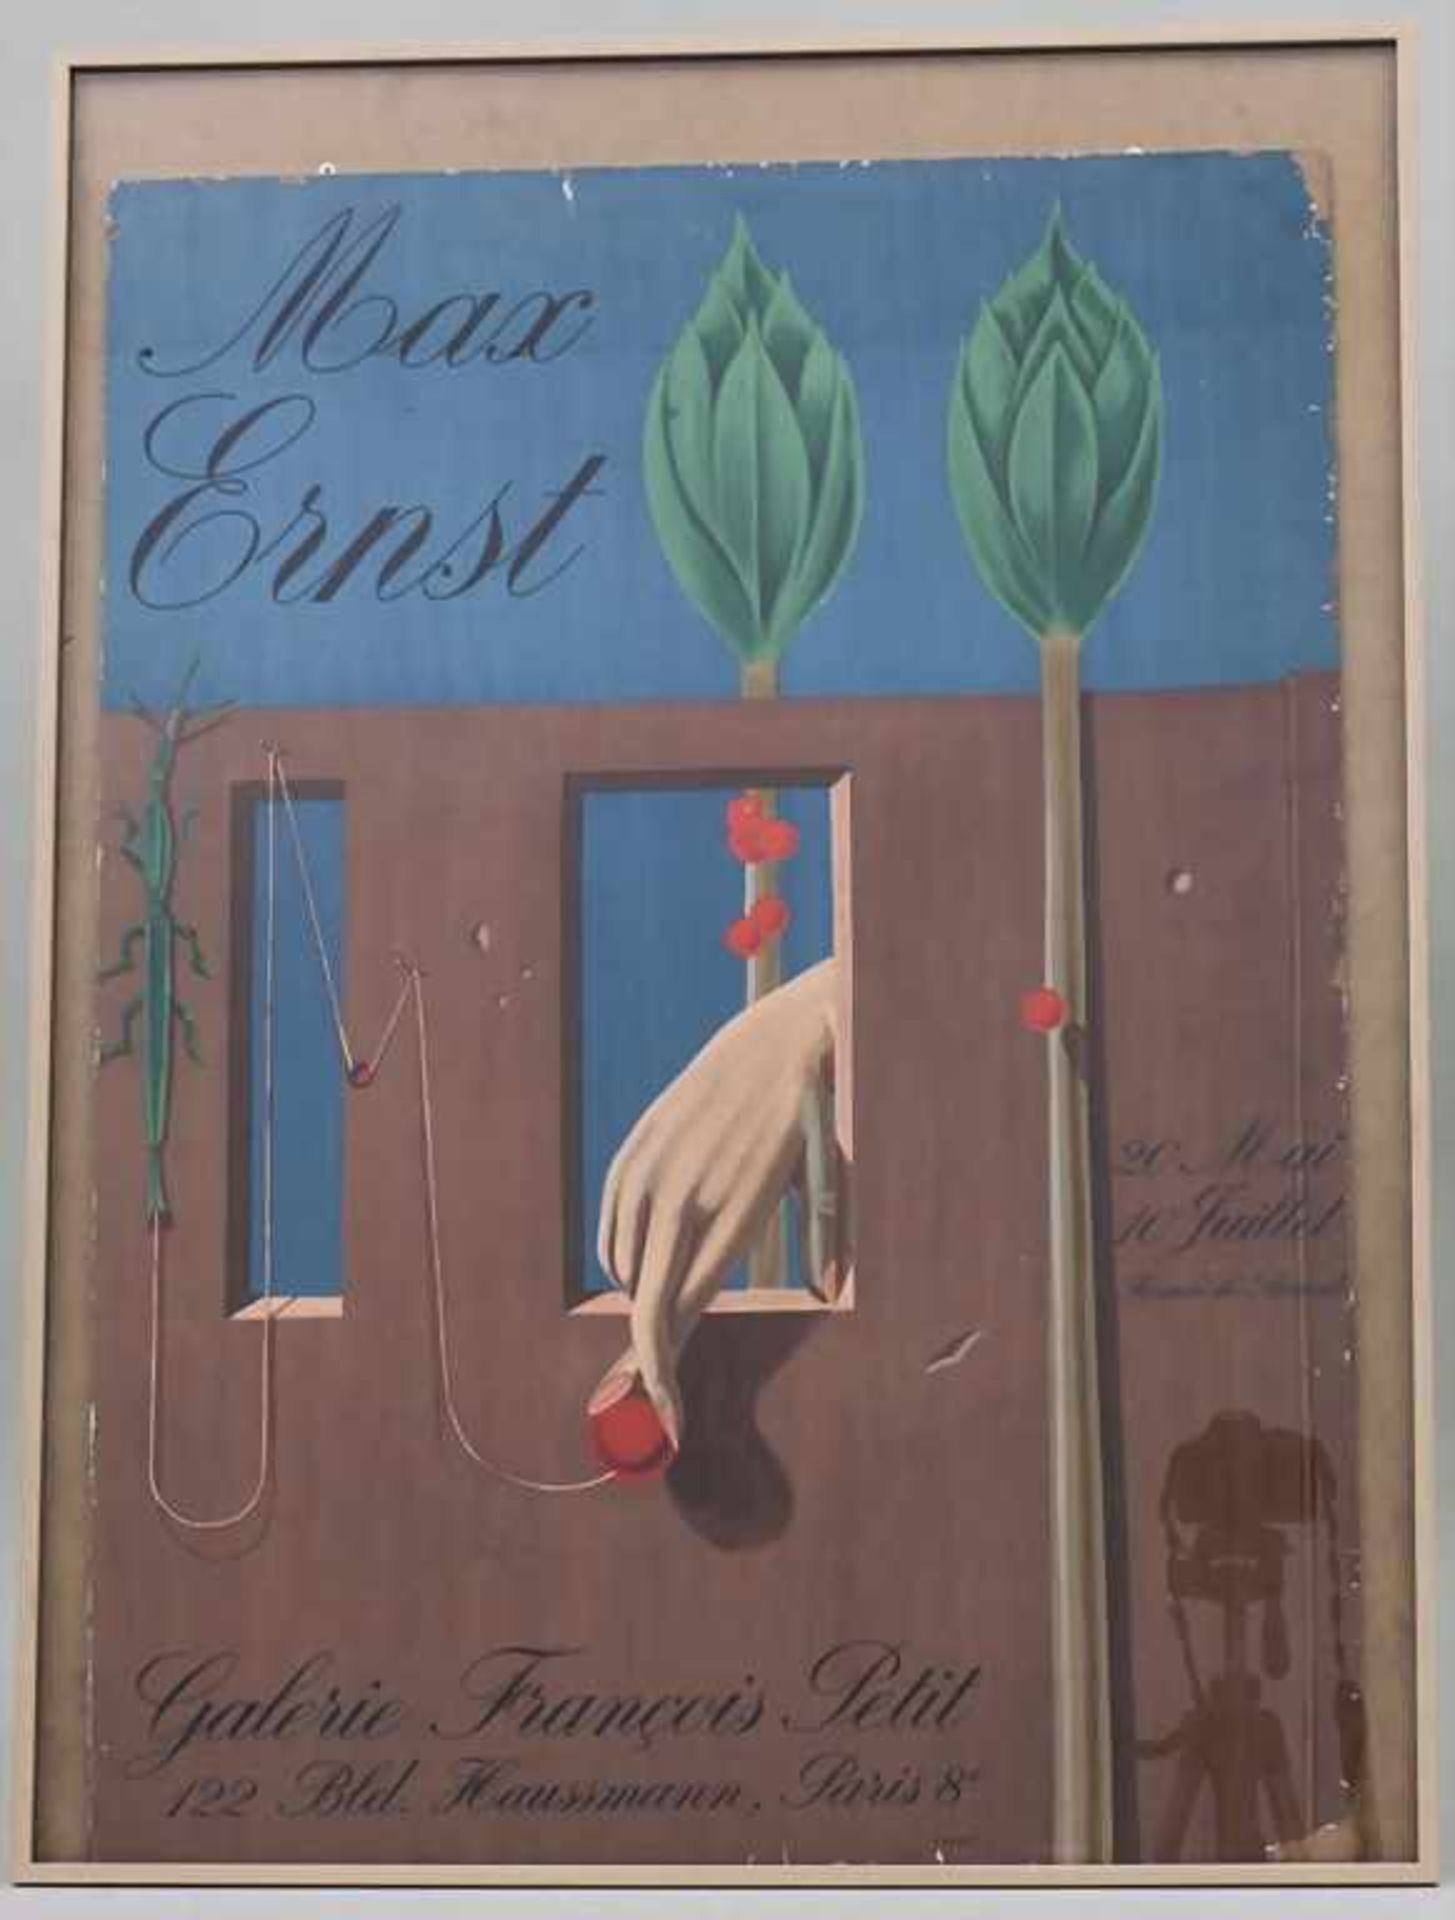 Ausstellungs-Plakat Max Ernst / Exhibition Poster Max Ernst, Paris, 1969